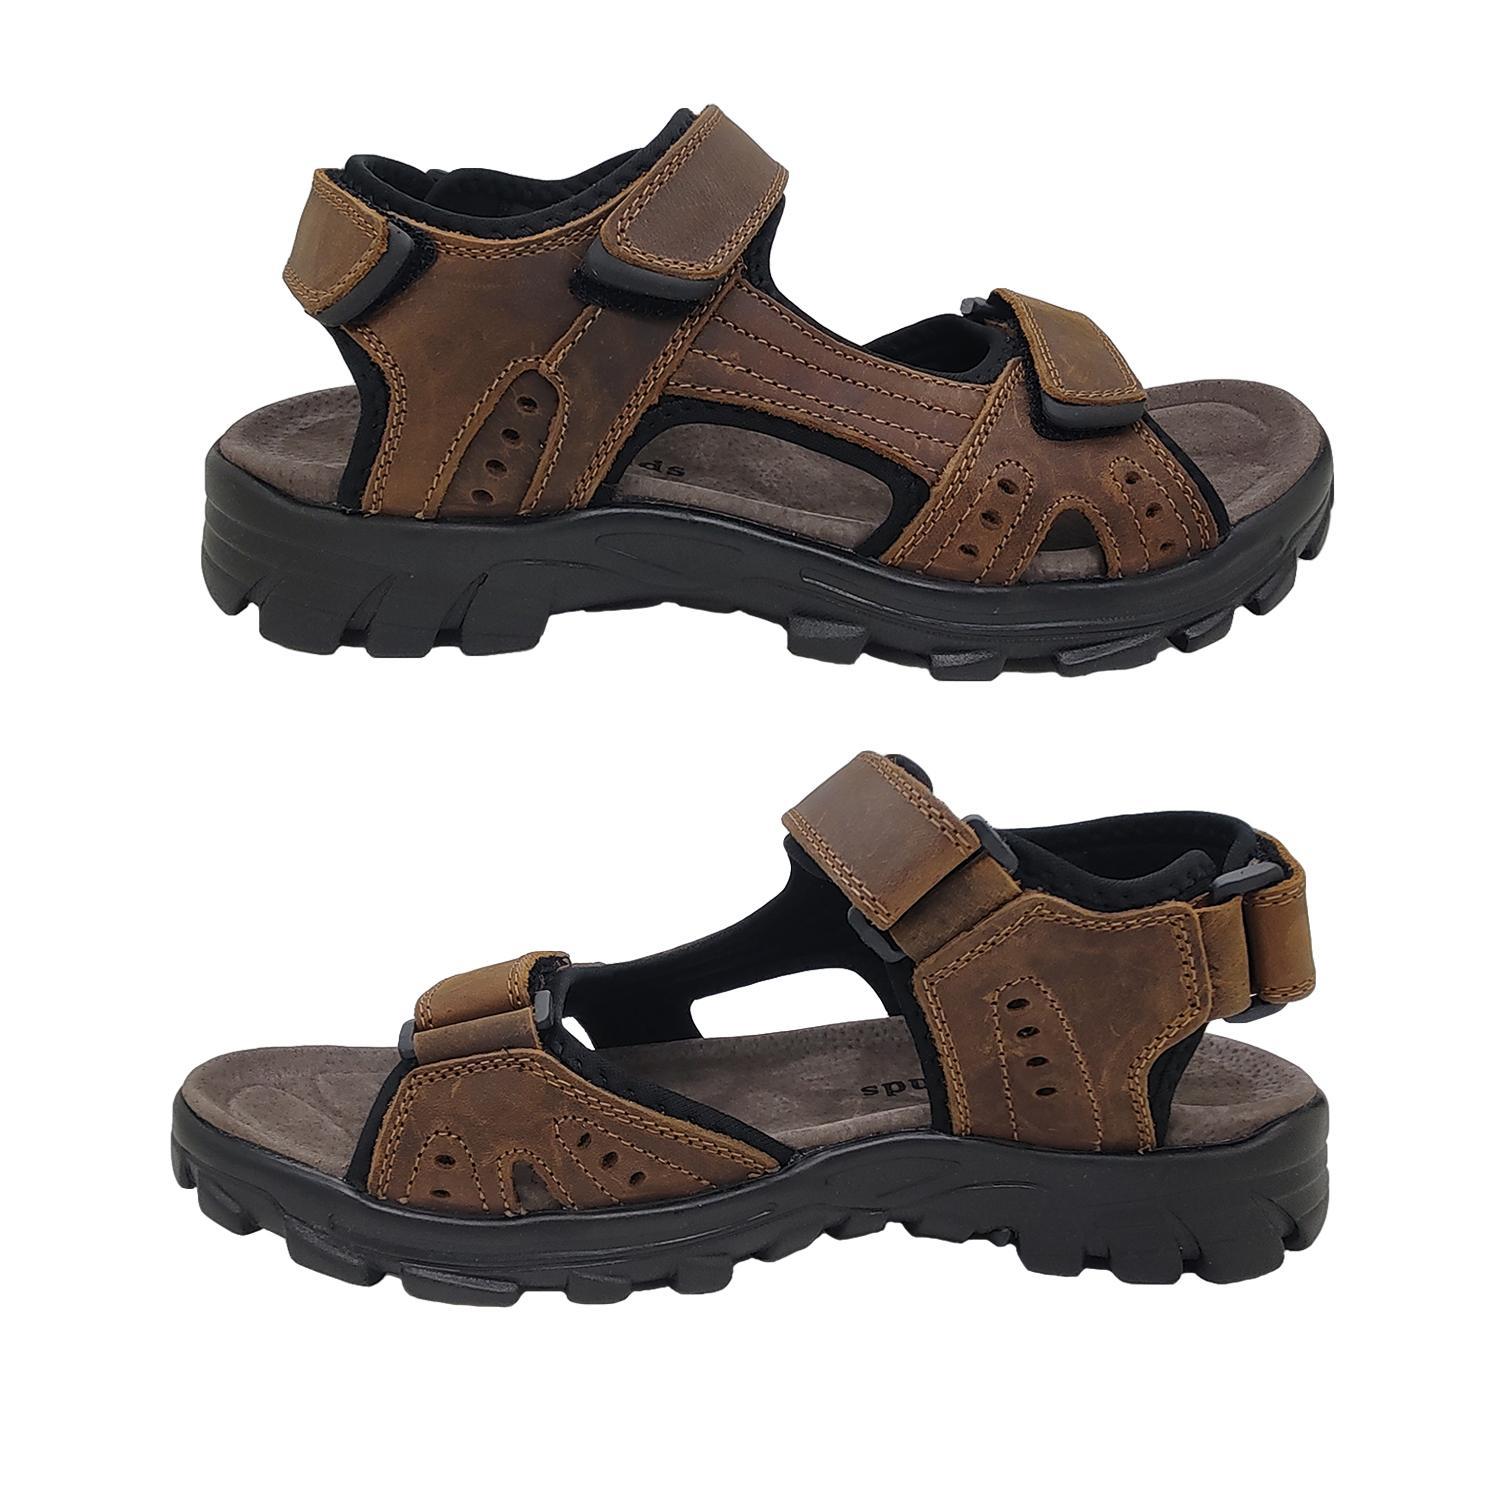 Woodlands Enrique Mens Sandals Leather Upper Multi Adjust Surf Style Comfort-Brown-12